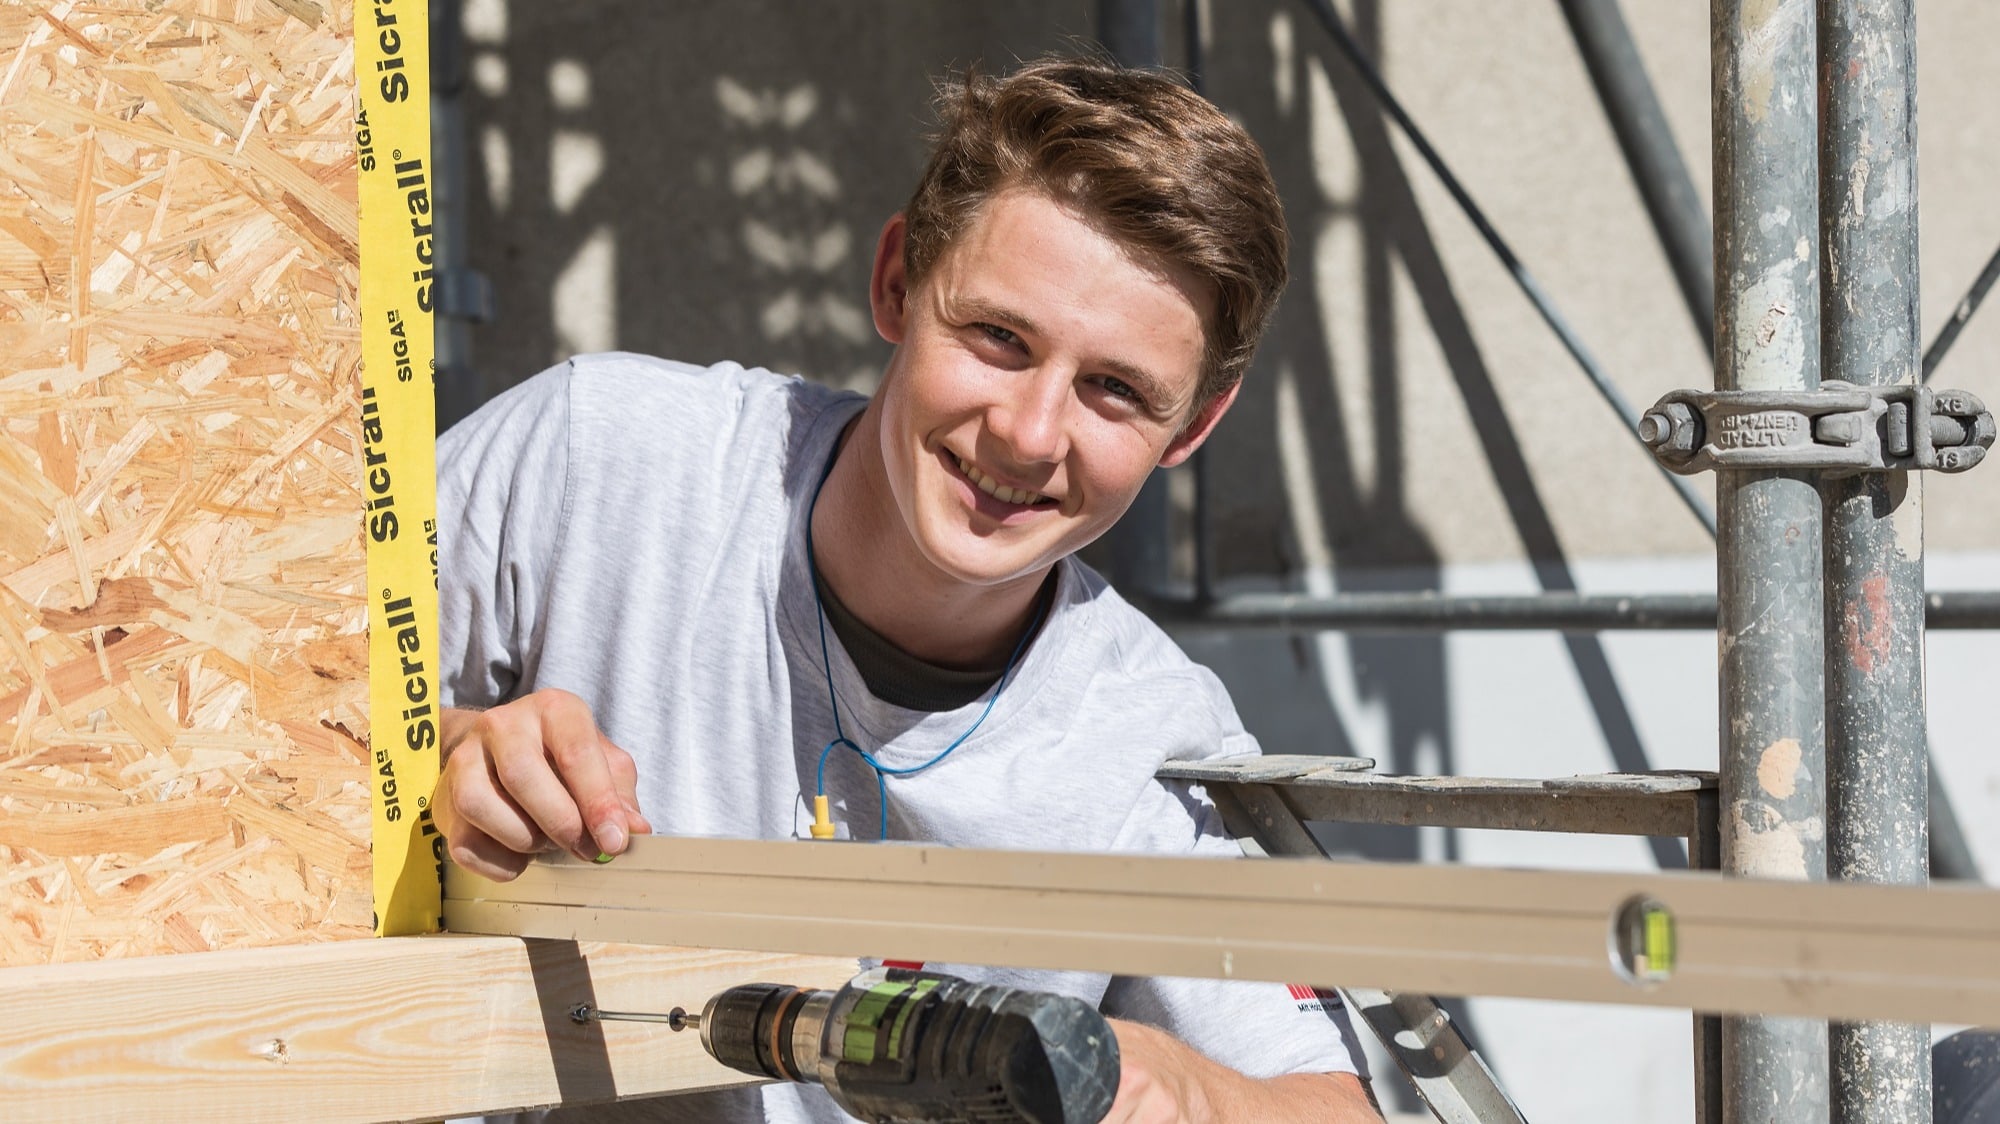 Lukas lernt bei Tschopp Holzbau in Hochdorf. Seine Lehre folgt auf eine erfolgreiche Matura.